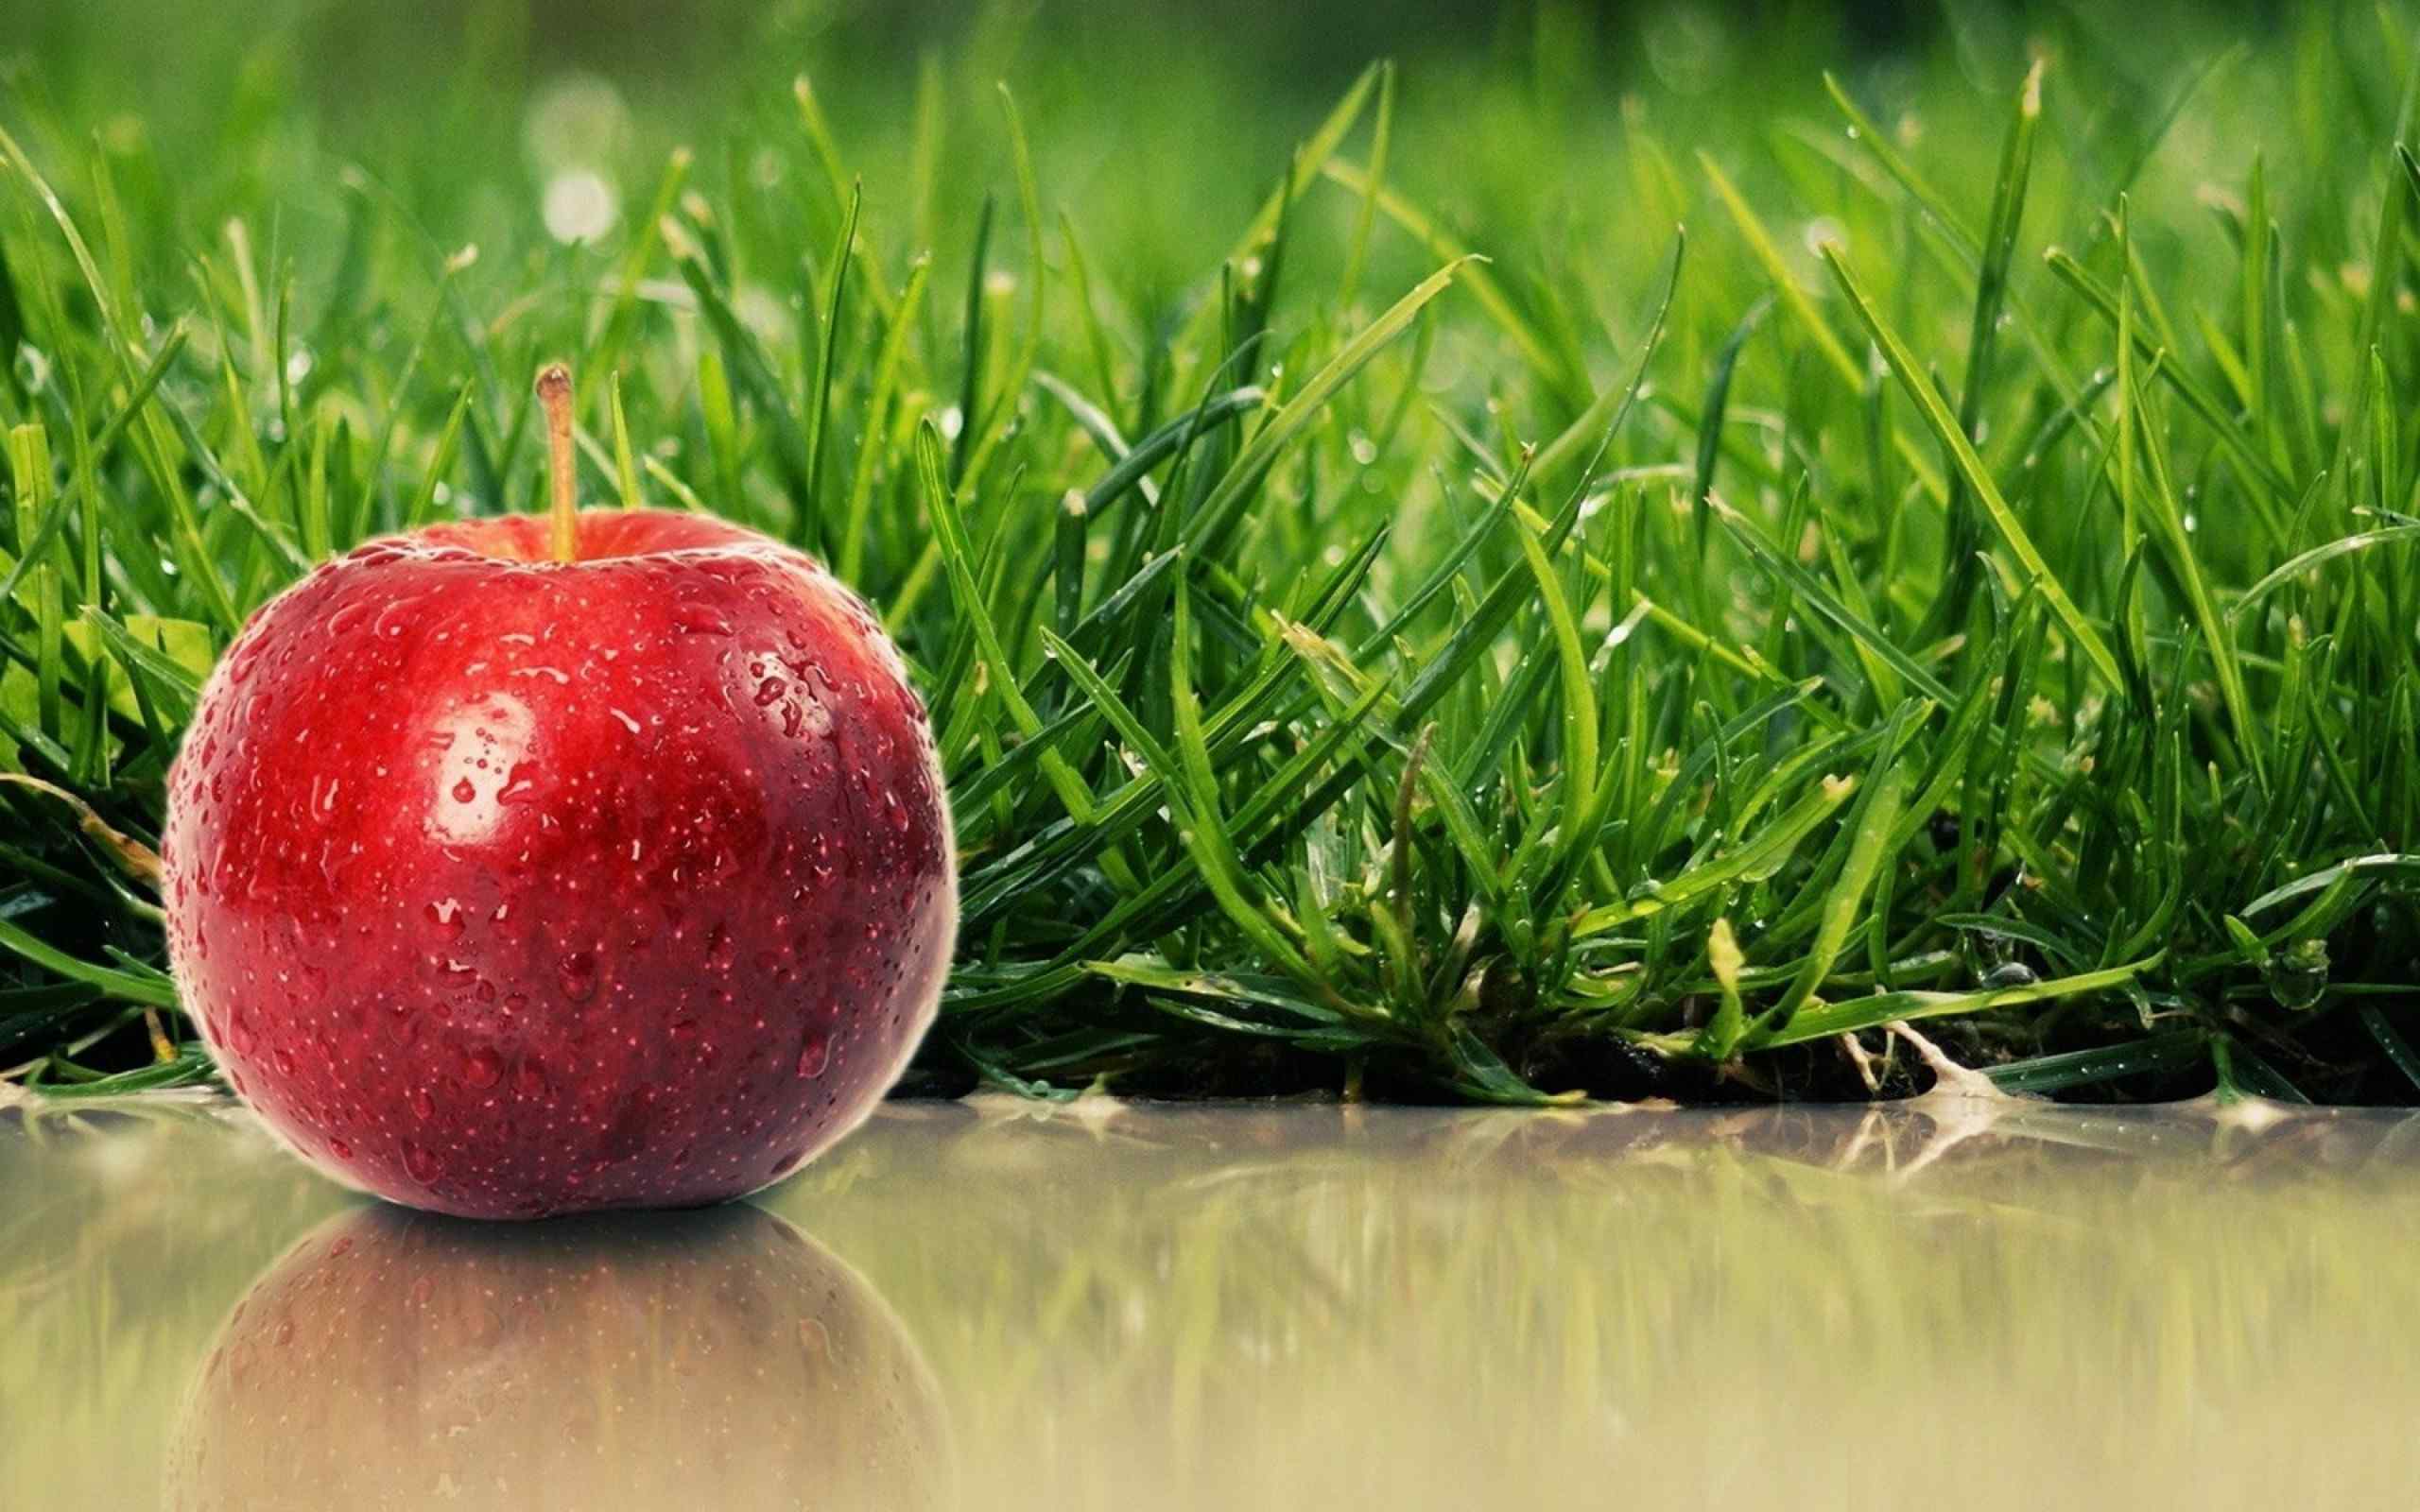 雨后青草背景大红苹果桌面壁纸